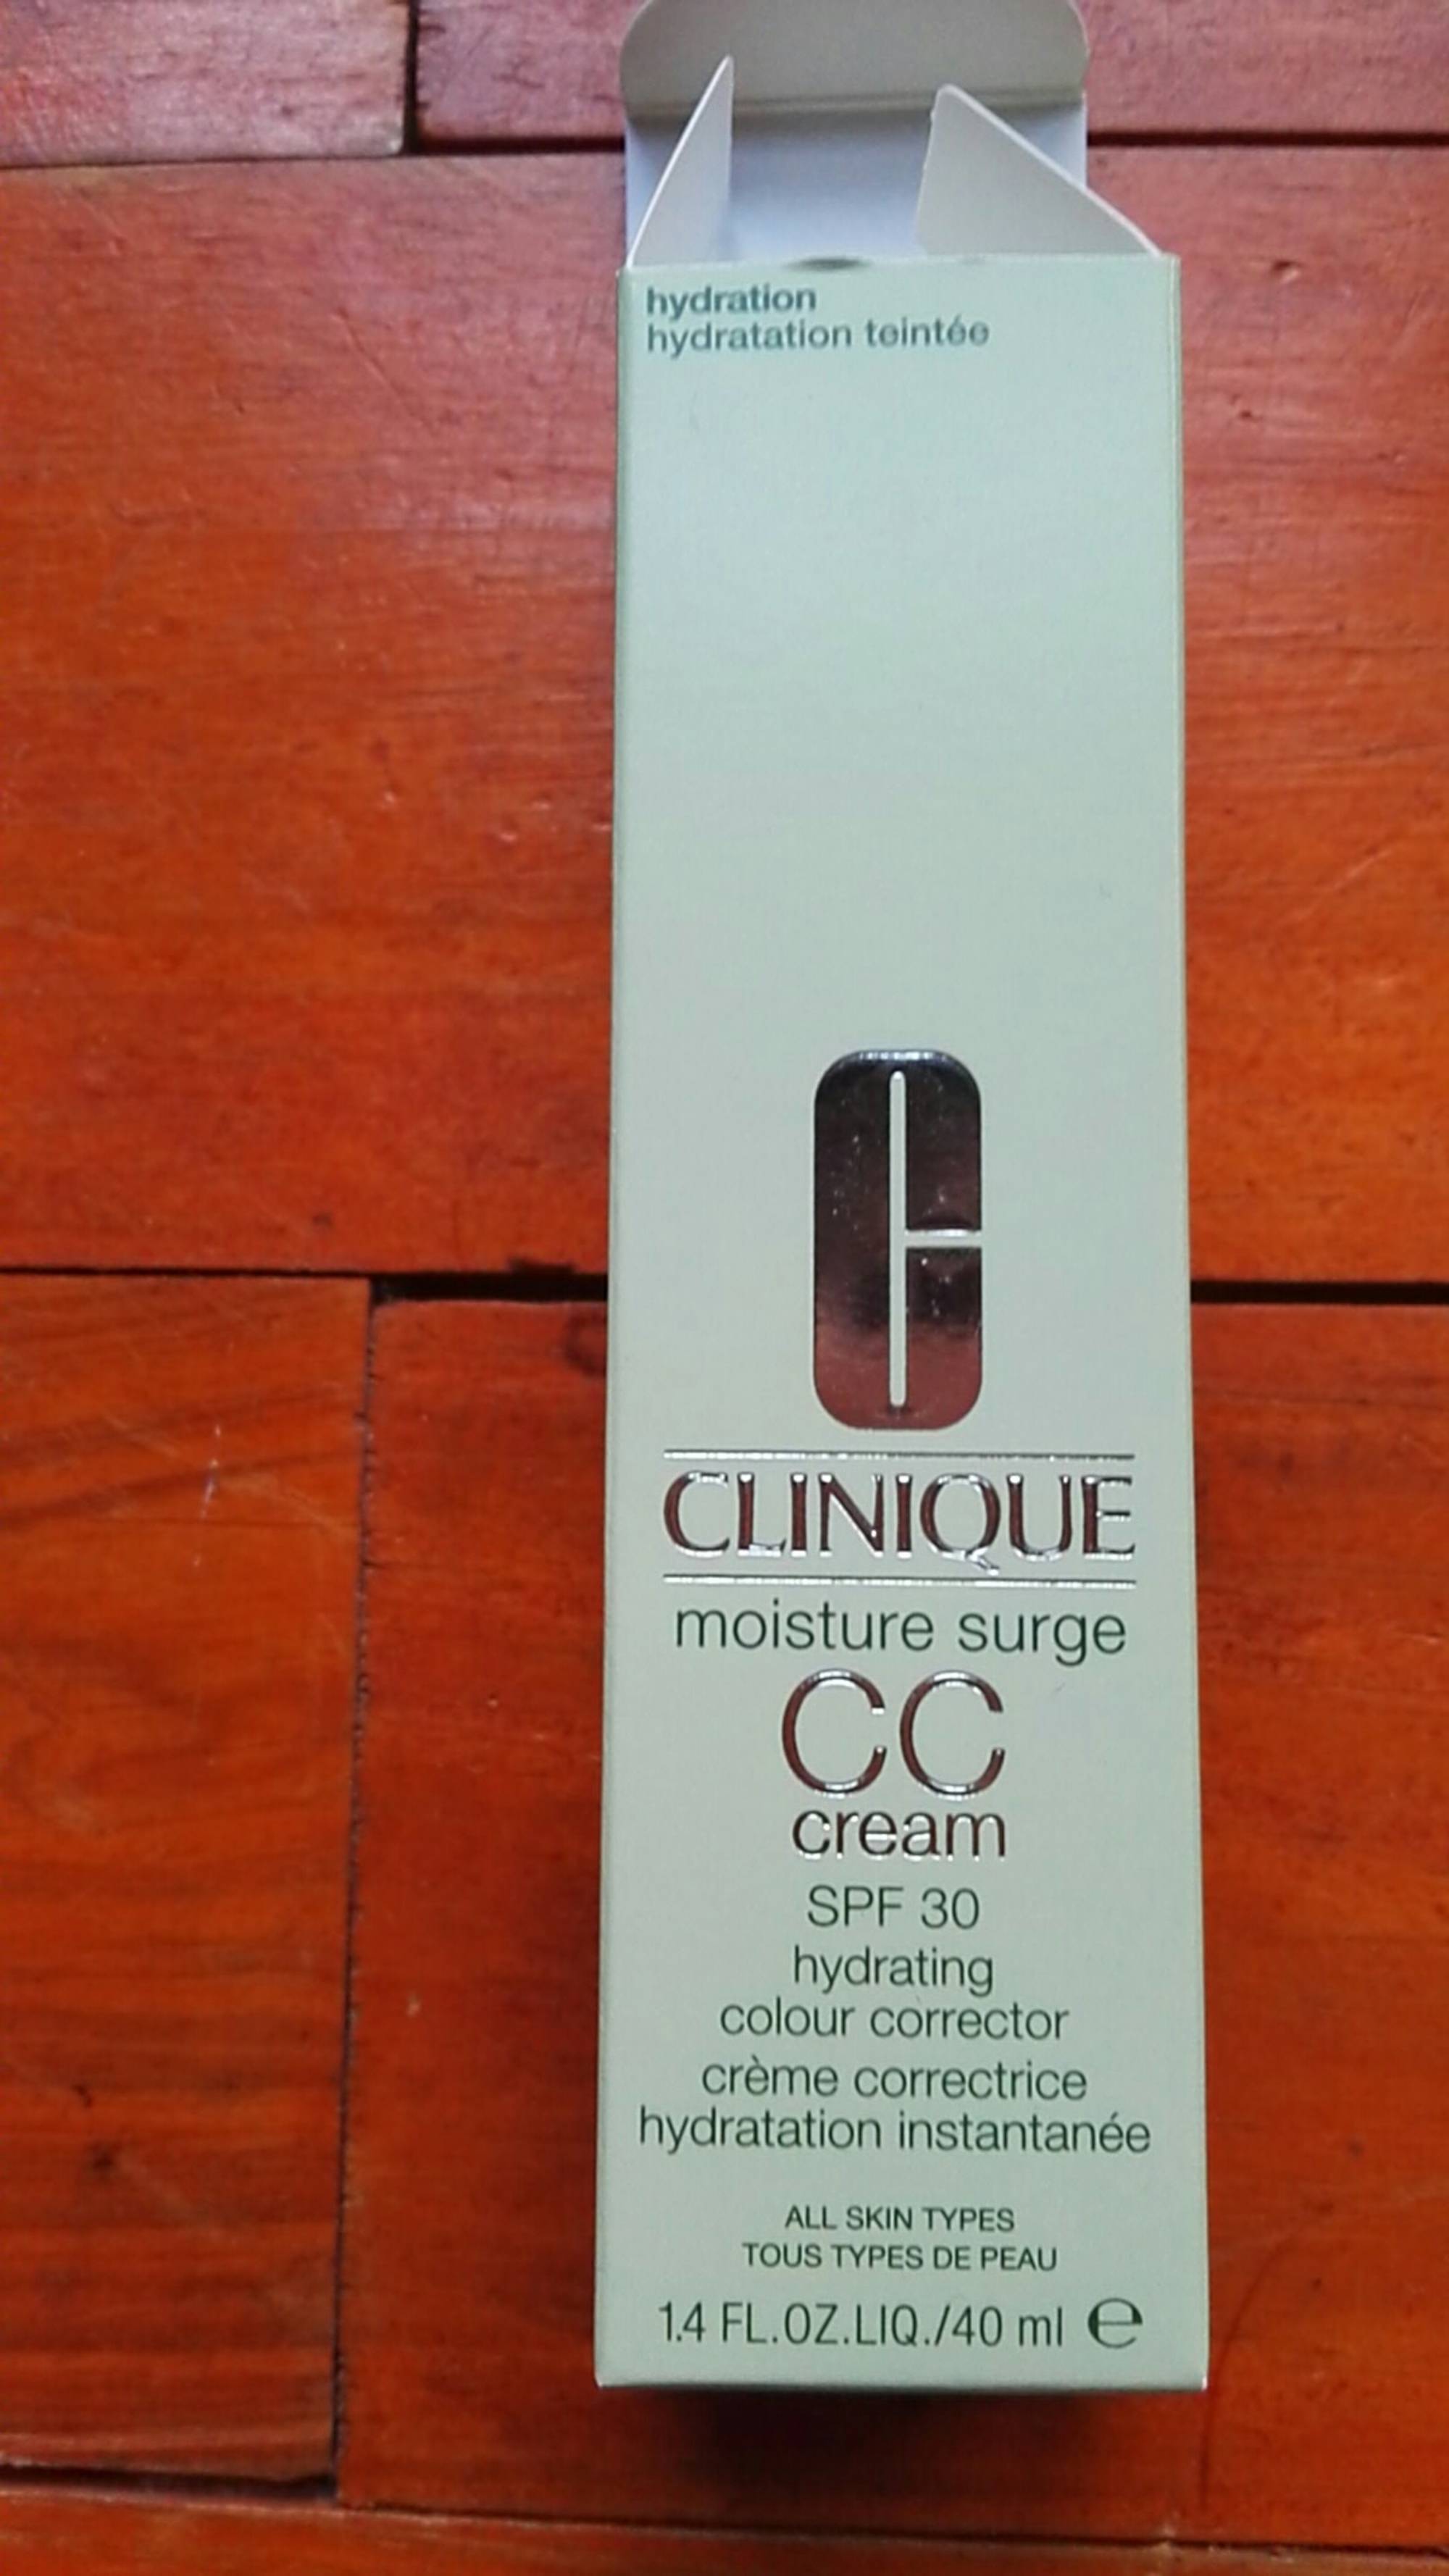 CLINIQUE - Moisture surge - CC cream SPF 30